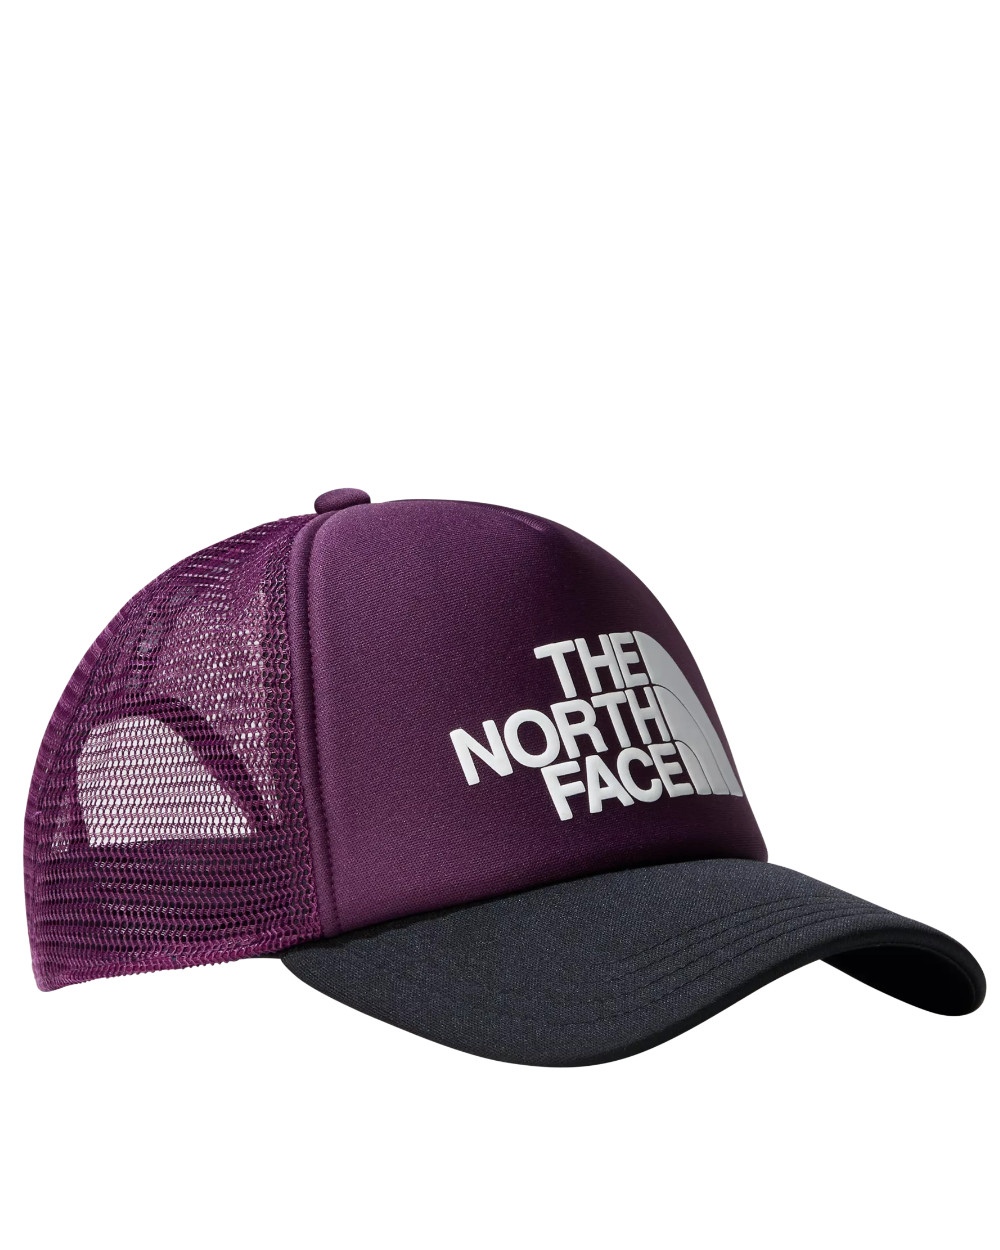  The North Face Cappello Berretto Viola Logo Trucker Lifestyle